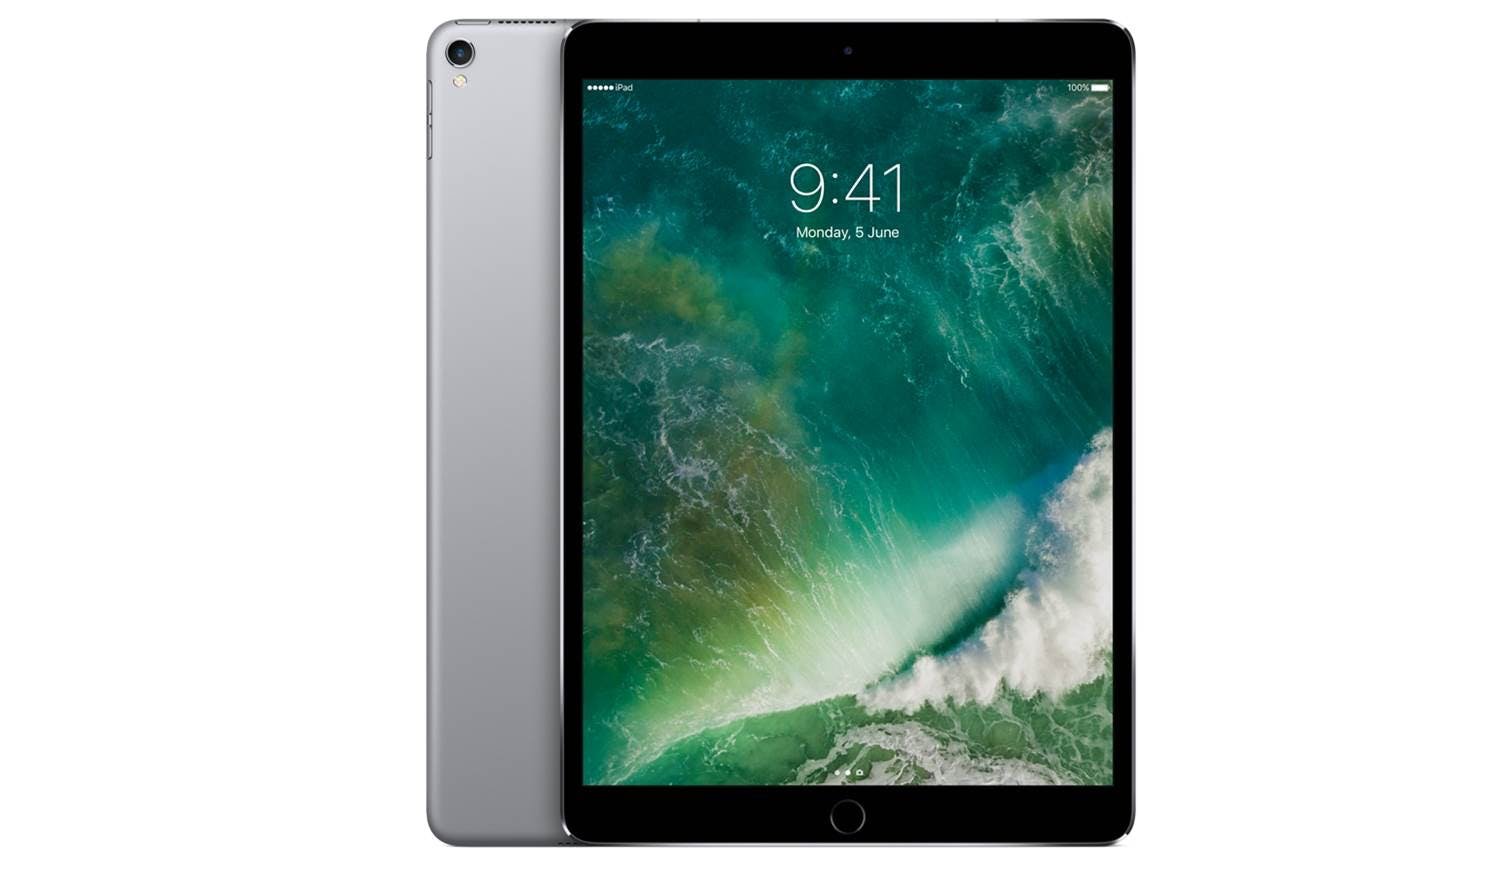 Apple iPad Pro 10.5in (2017) 64GB, Wi-Fi - Space Gray (Renewed)